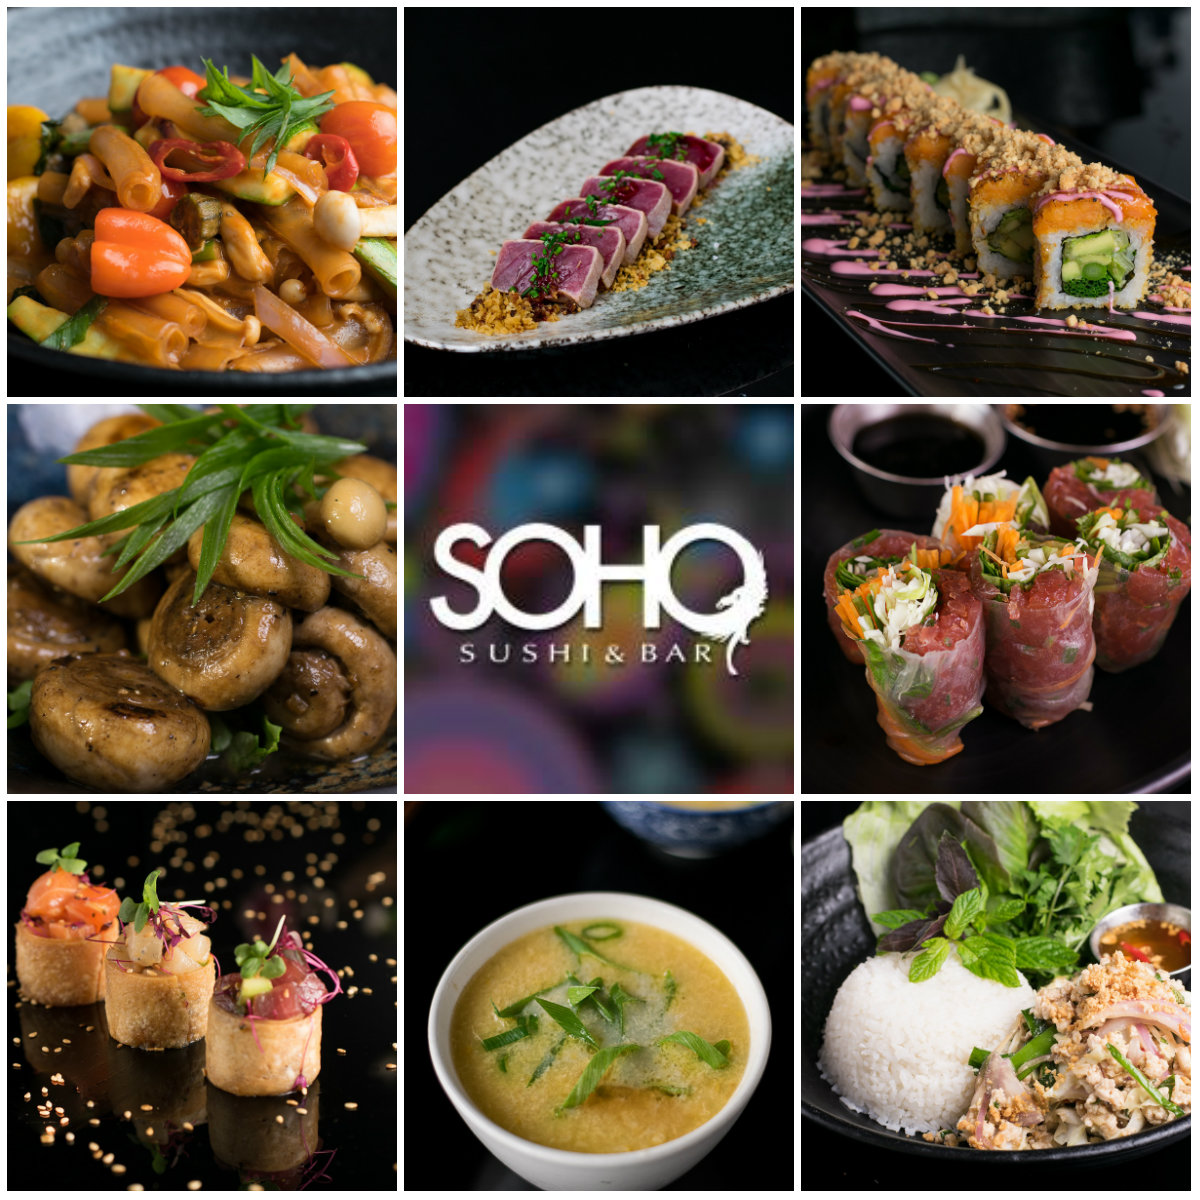 SOHO не перестает удивлять: к 15-летию – 15 новых блюд в меню